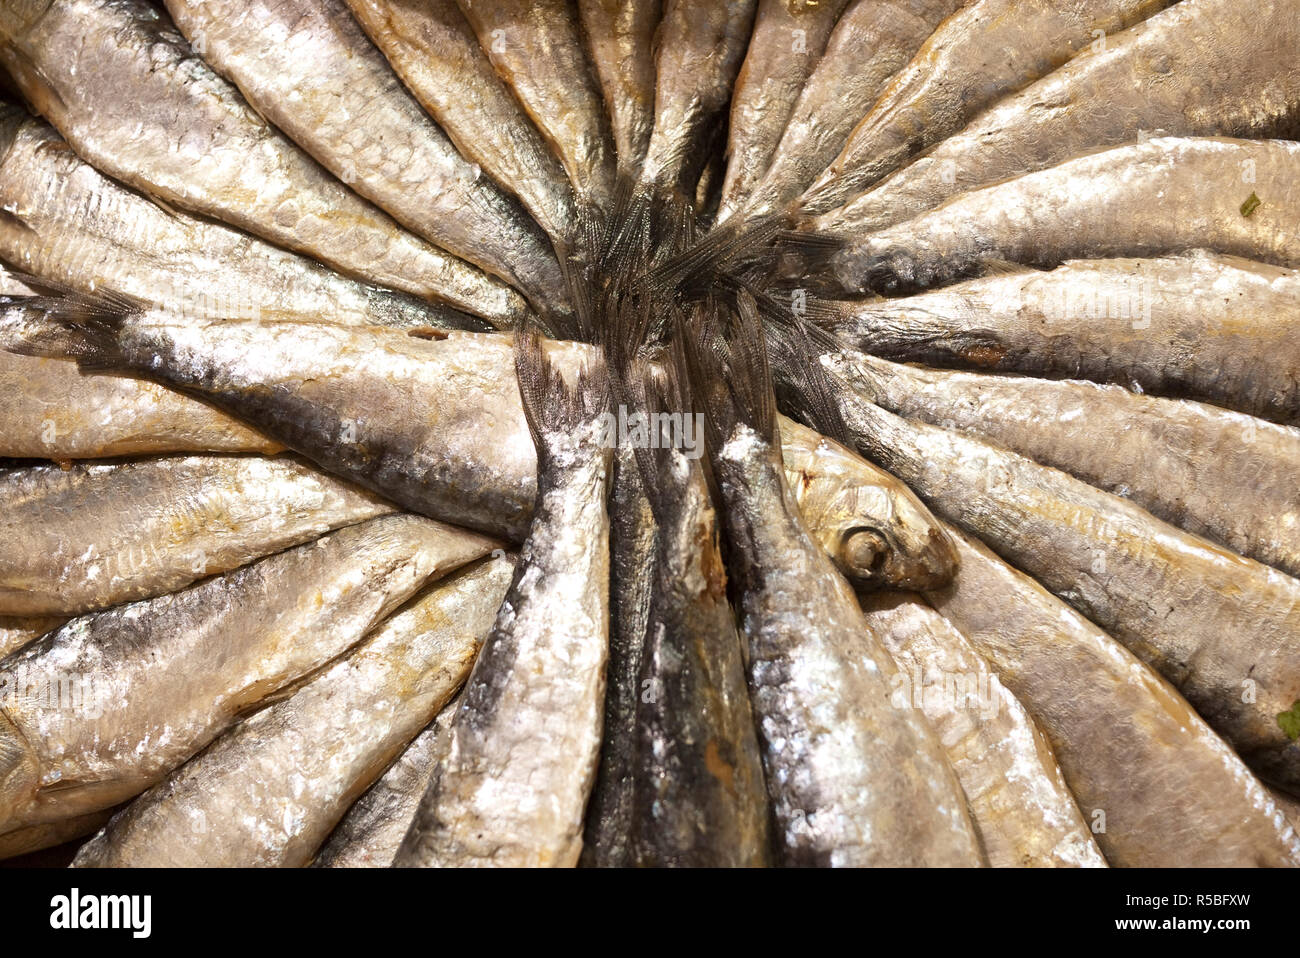 Fisch, der für den Verkauf in den Markt La Boqueria, Barcelona, Spanien Stockfoto